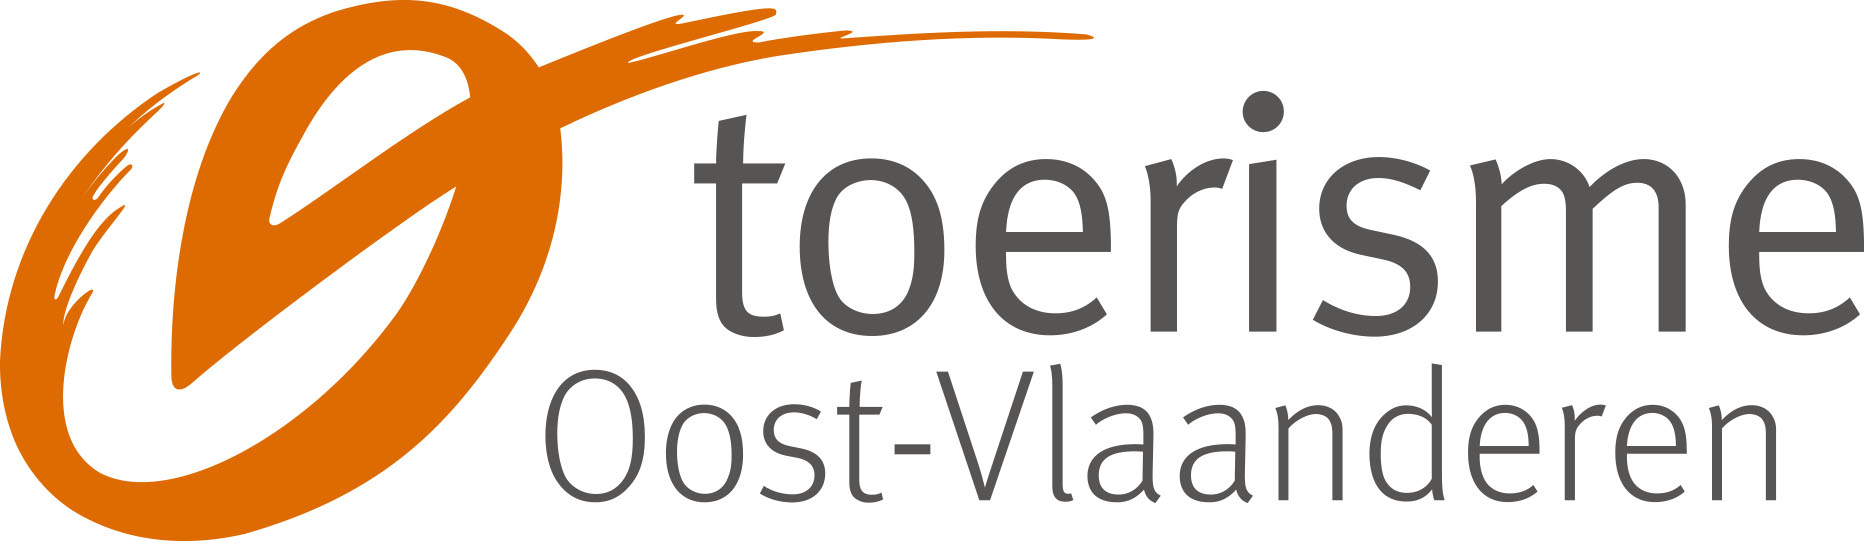 TOV logo2021 kleur